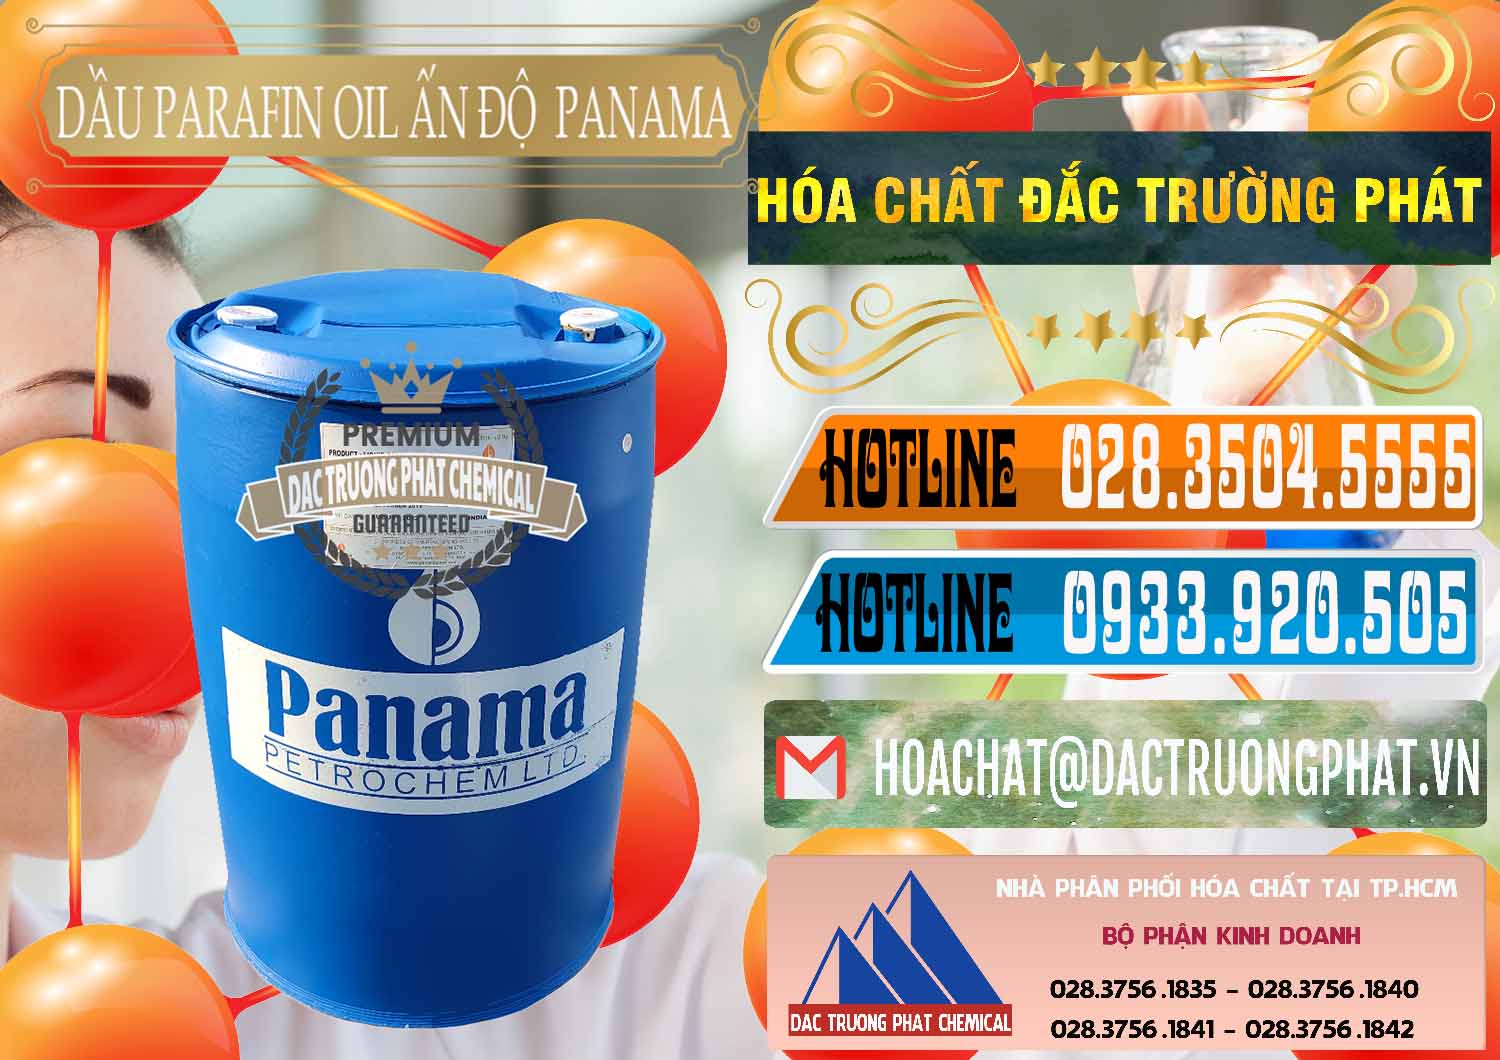 Chuyên bán và cung cấp Dầu Parafin Oil Panama Ấn Độ India - 0061 - Nơi chuyên phân phối - bán hóa chất tại TP.HCM - stmp.net